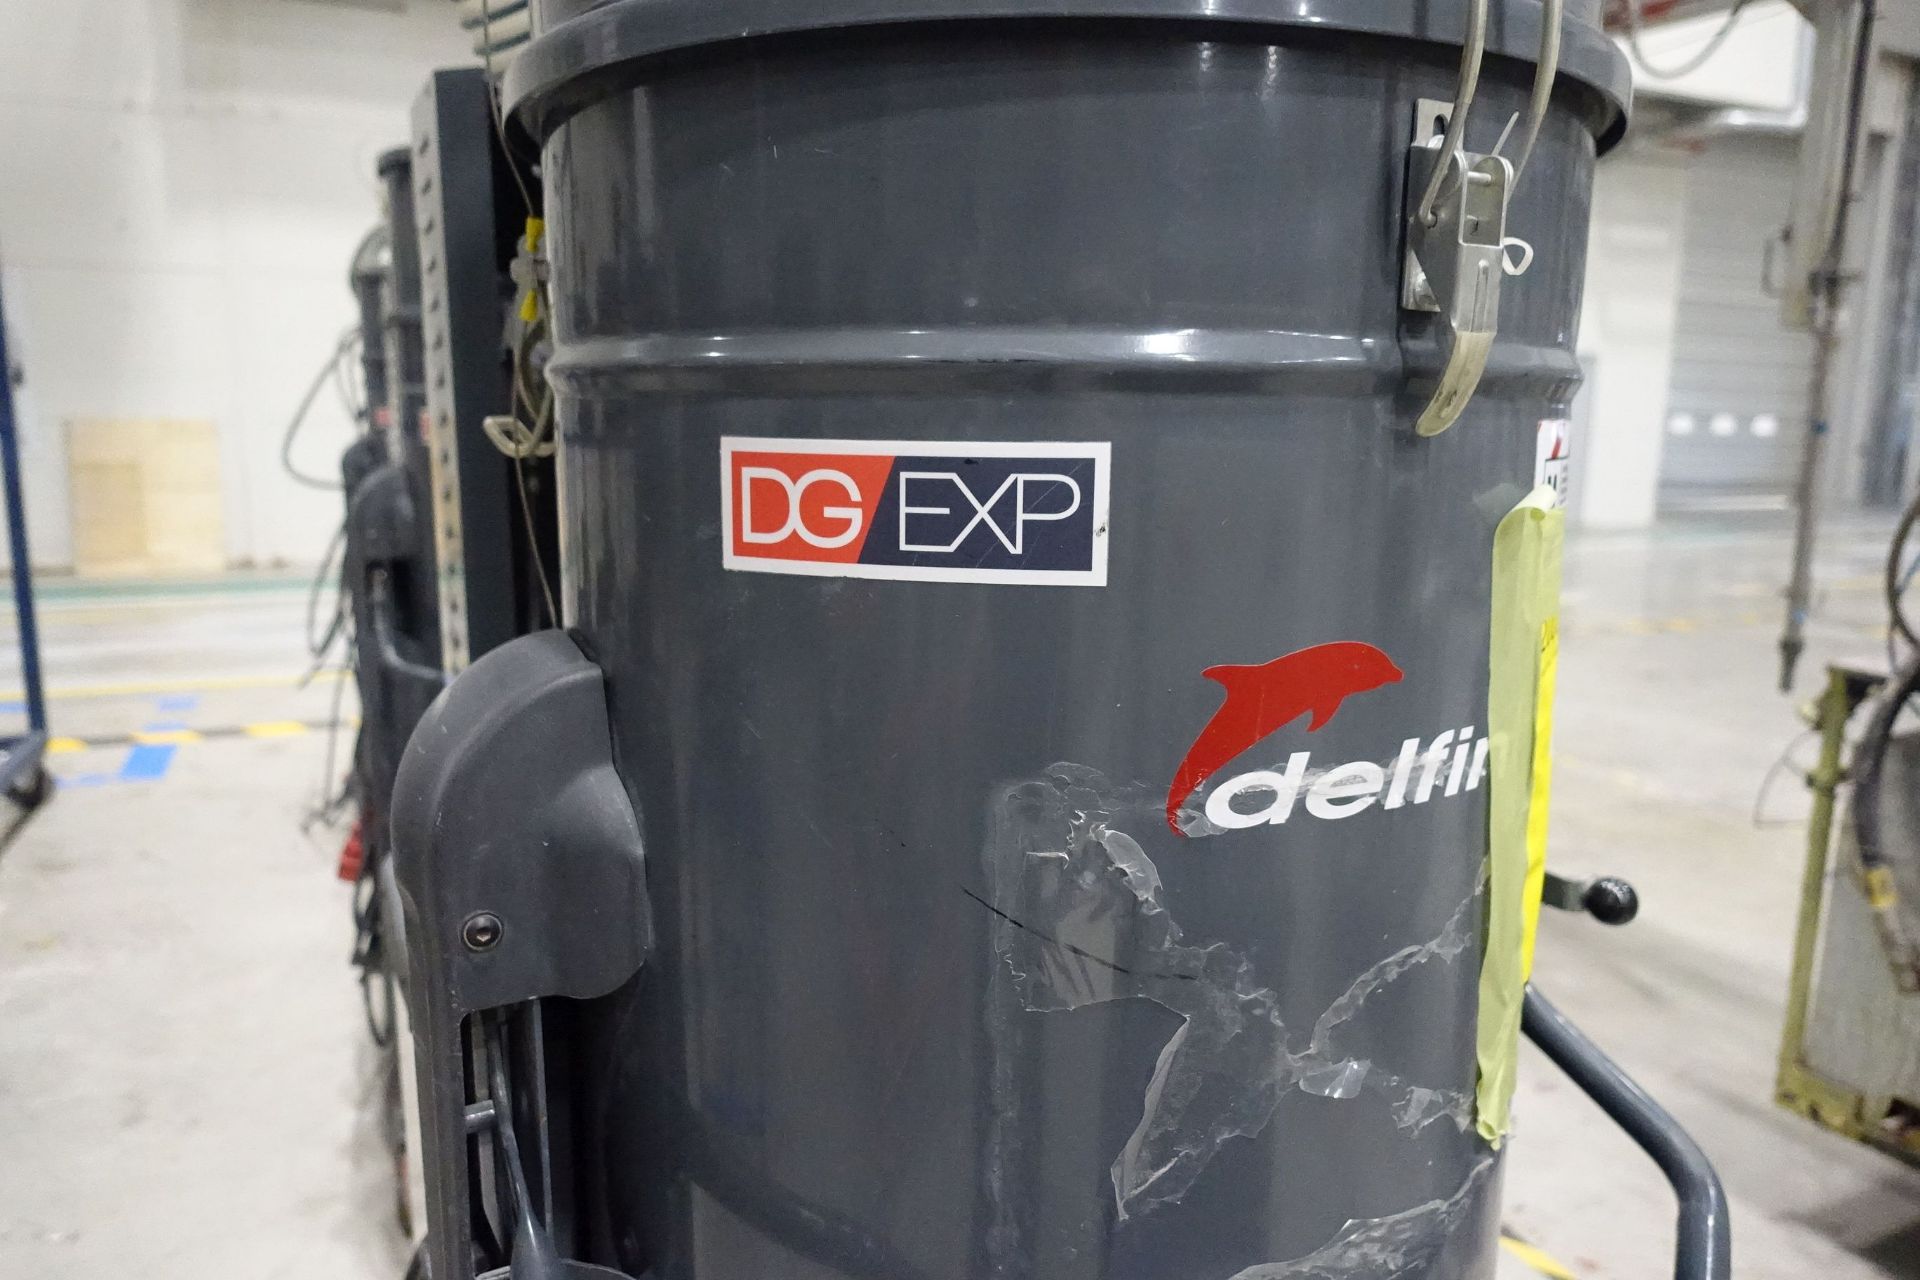 DELFIN DG70EXPPN Industrial Vaccum Cleaner (2016), Ser # 160878224, Asset # 2000033 - Image 2 of 13